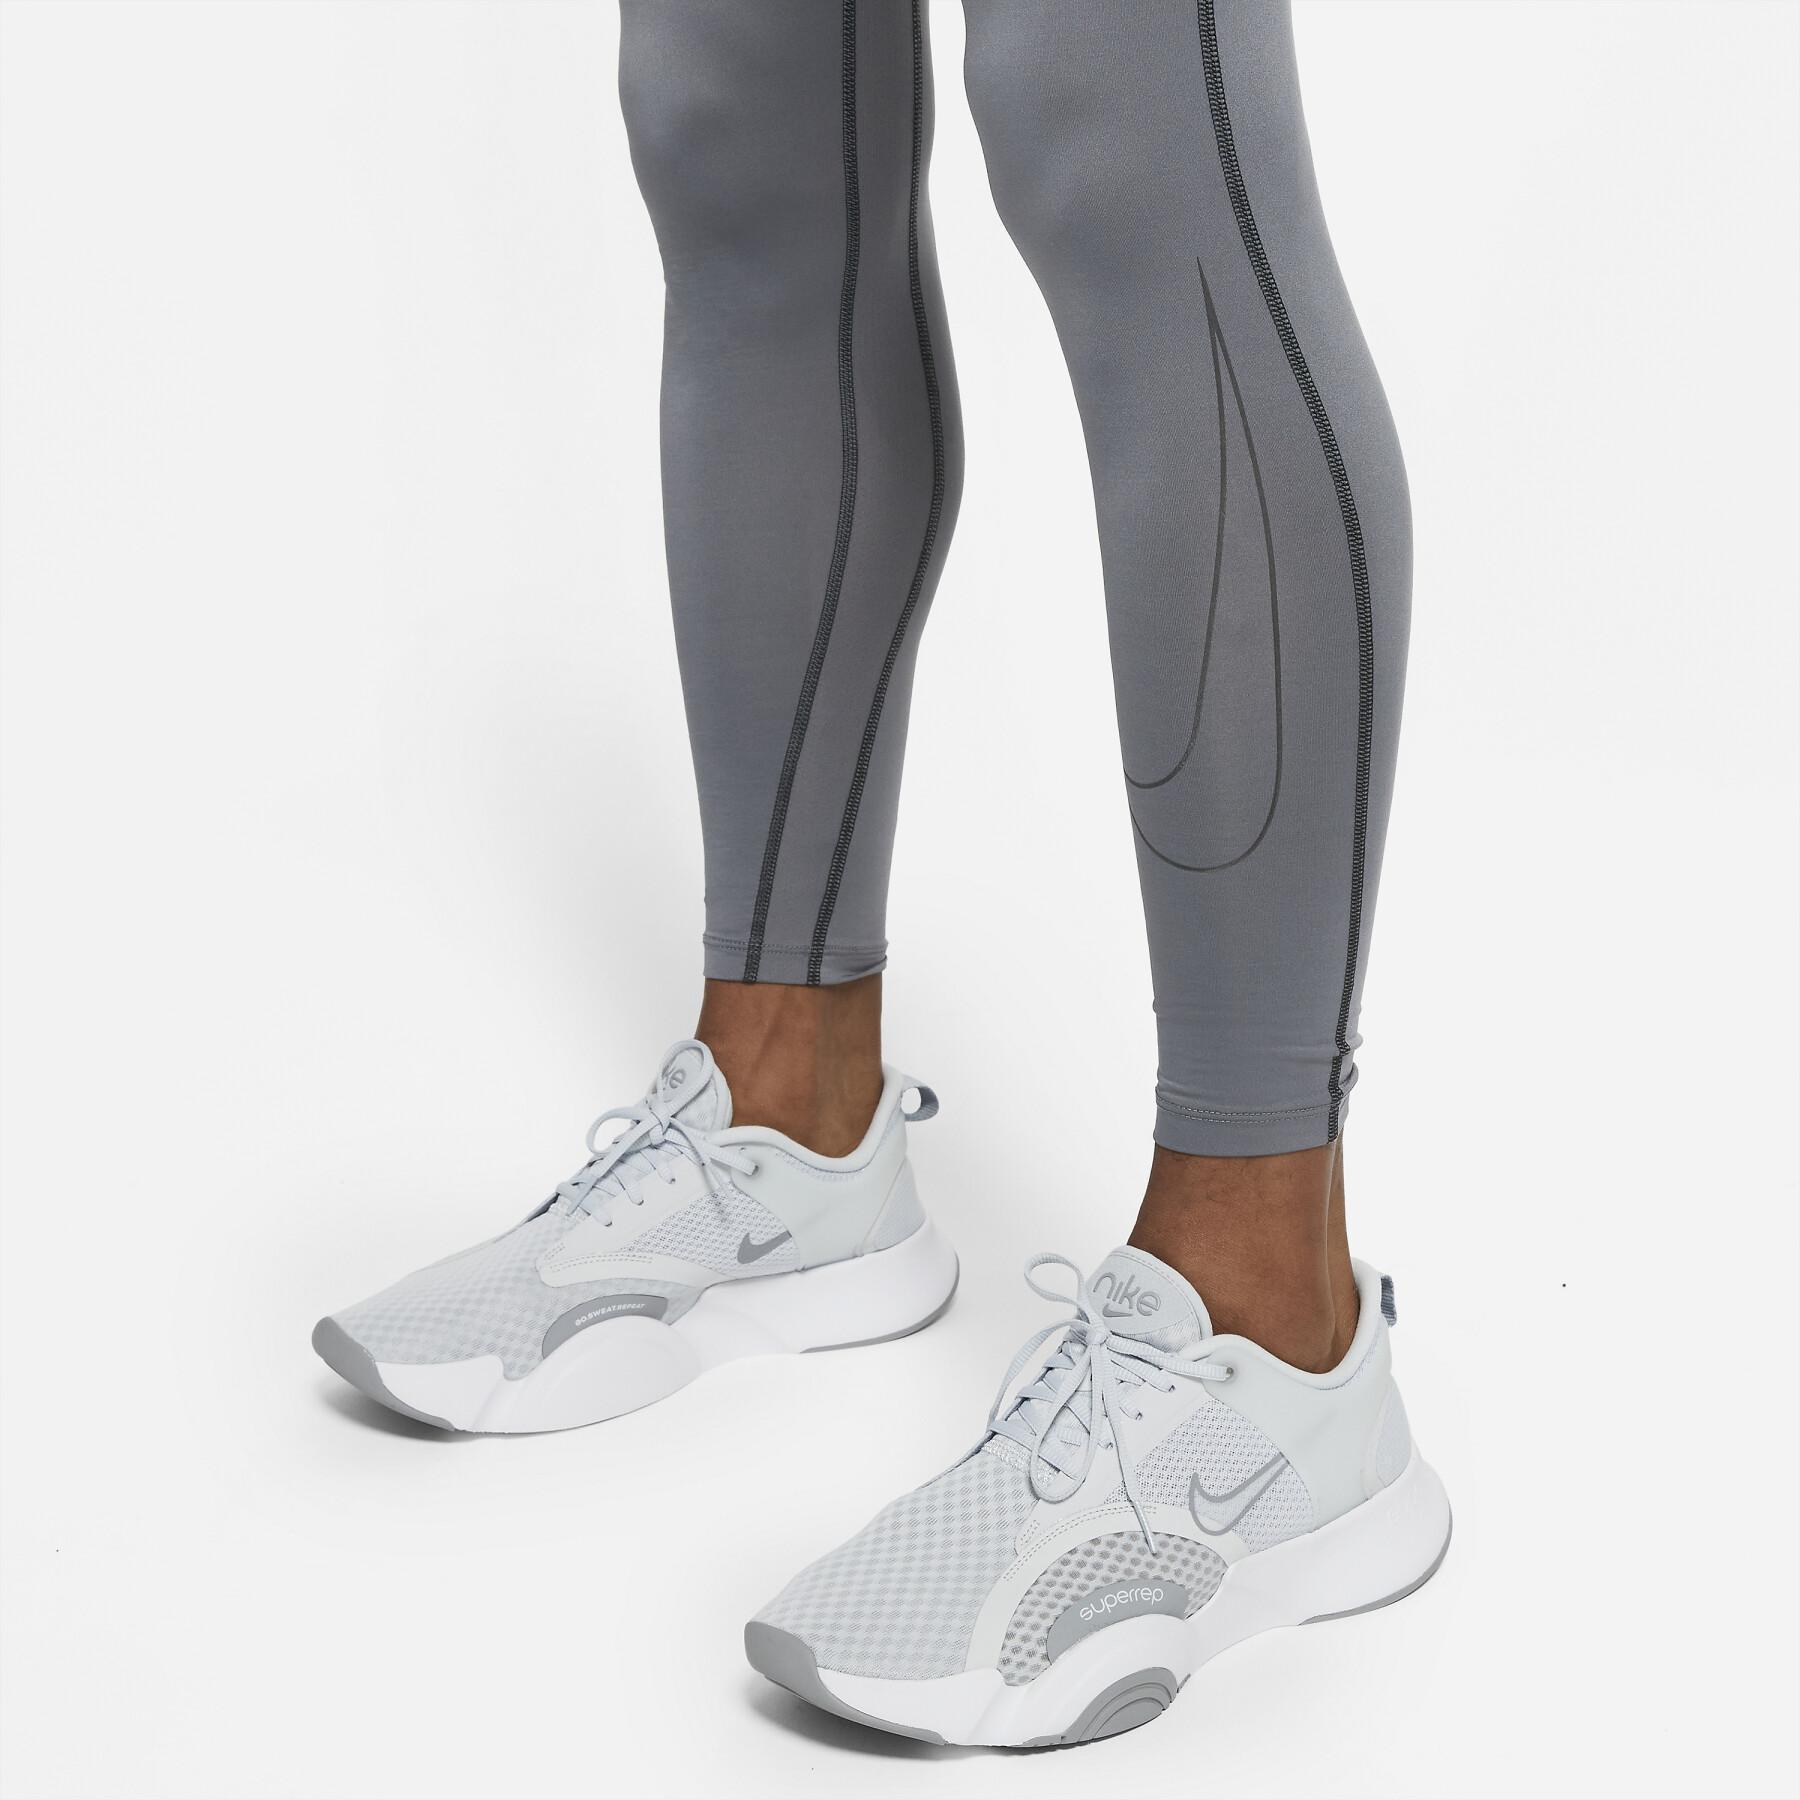 Legging de compression Nike Dri-Fit